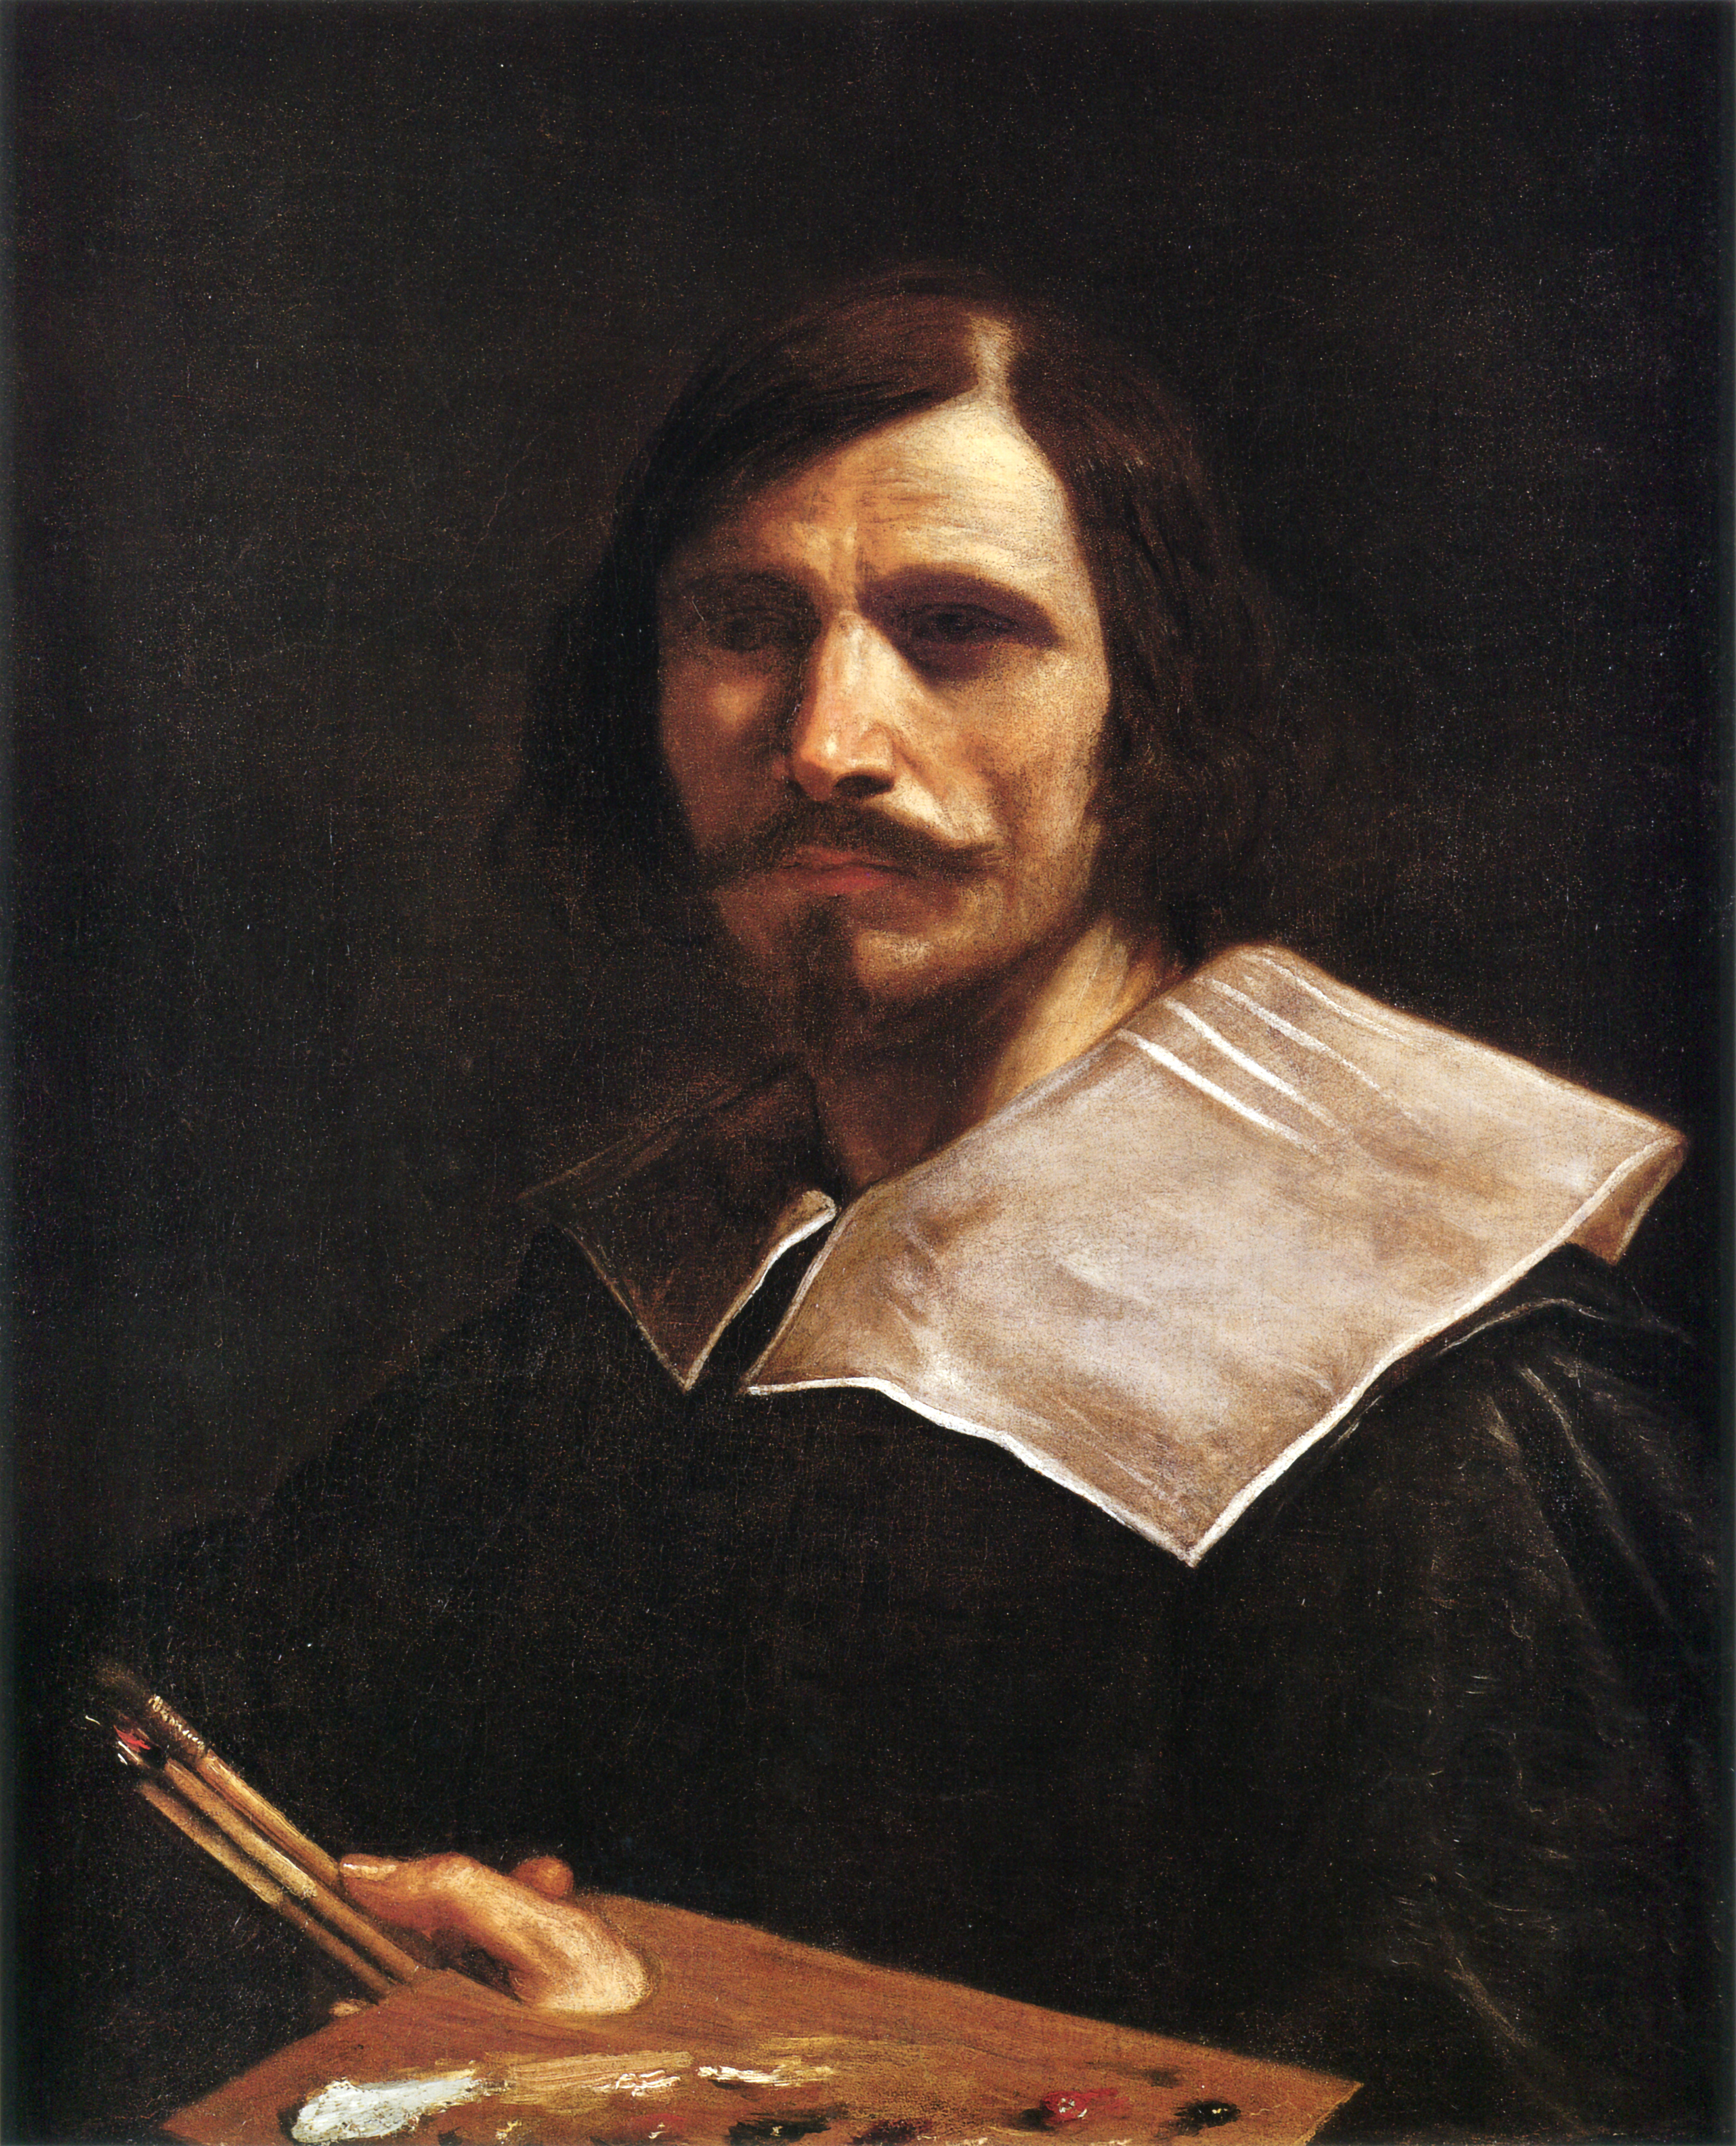 Guercino - February 8, 1591 - December 22, 1666